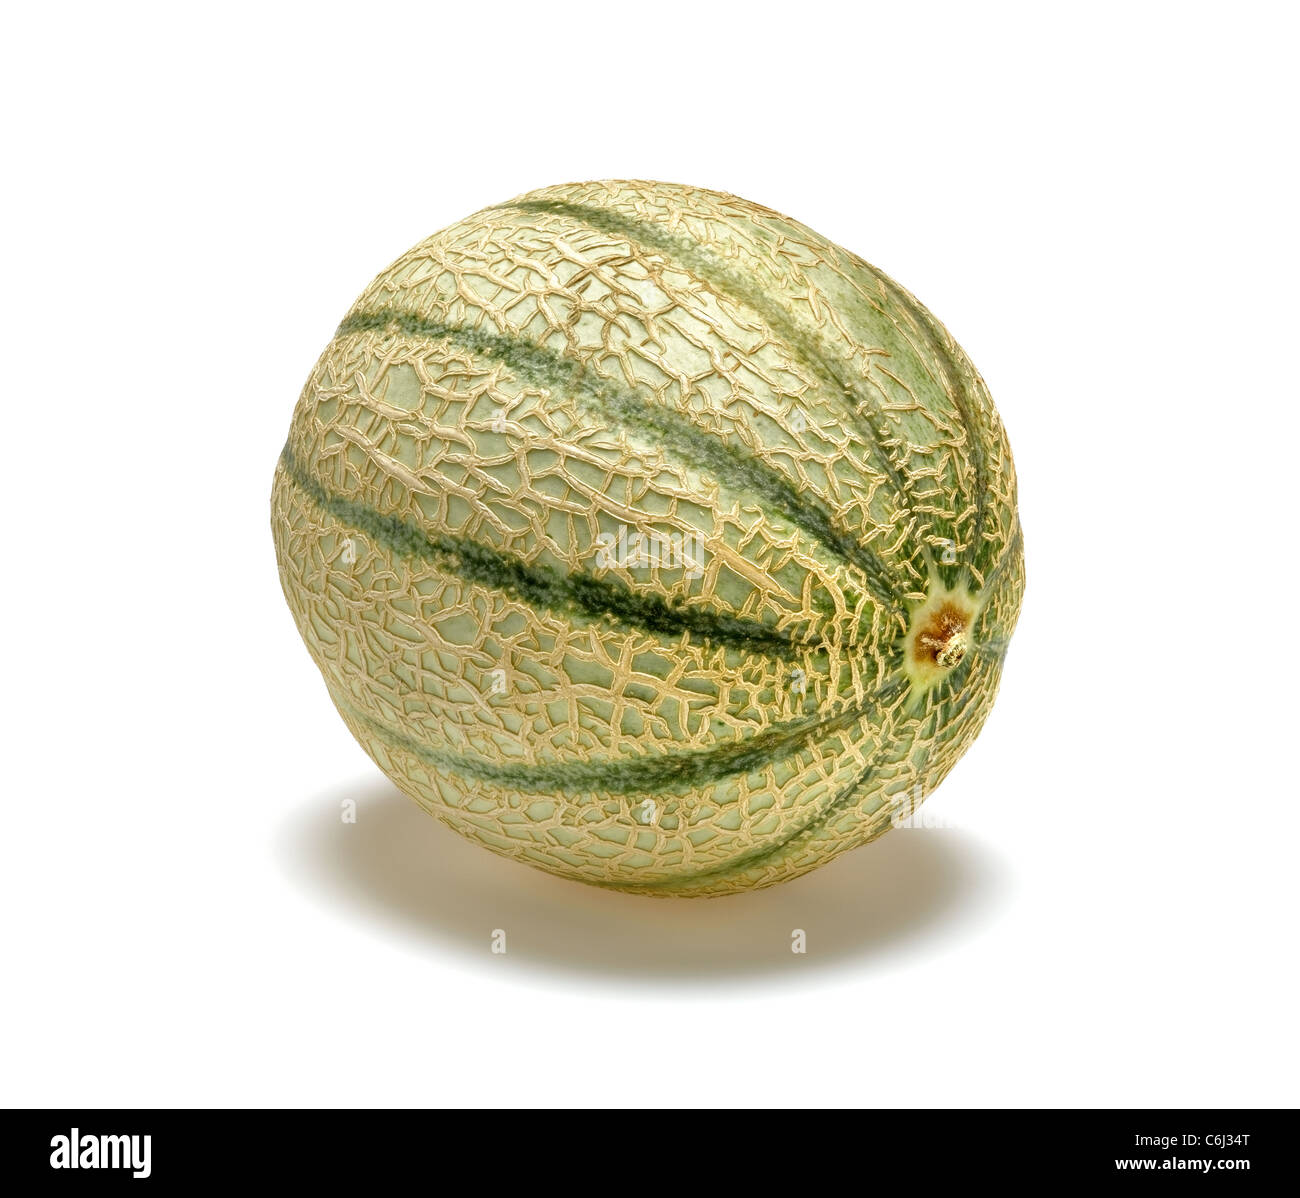 Melon cantaloup Banque D'Images